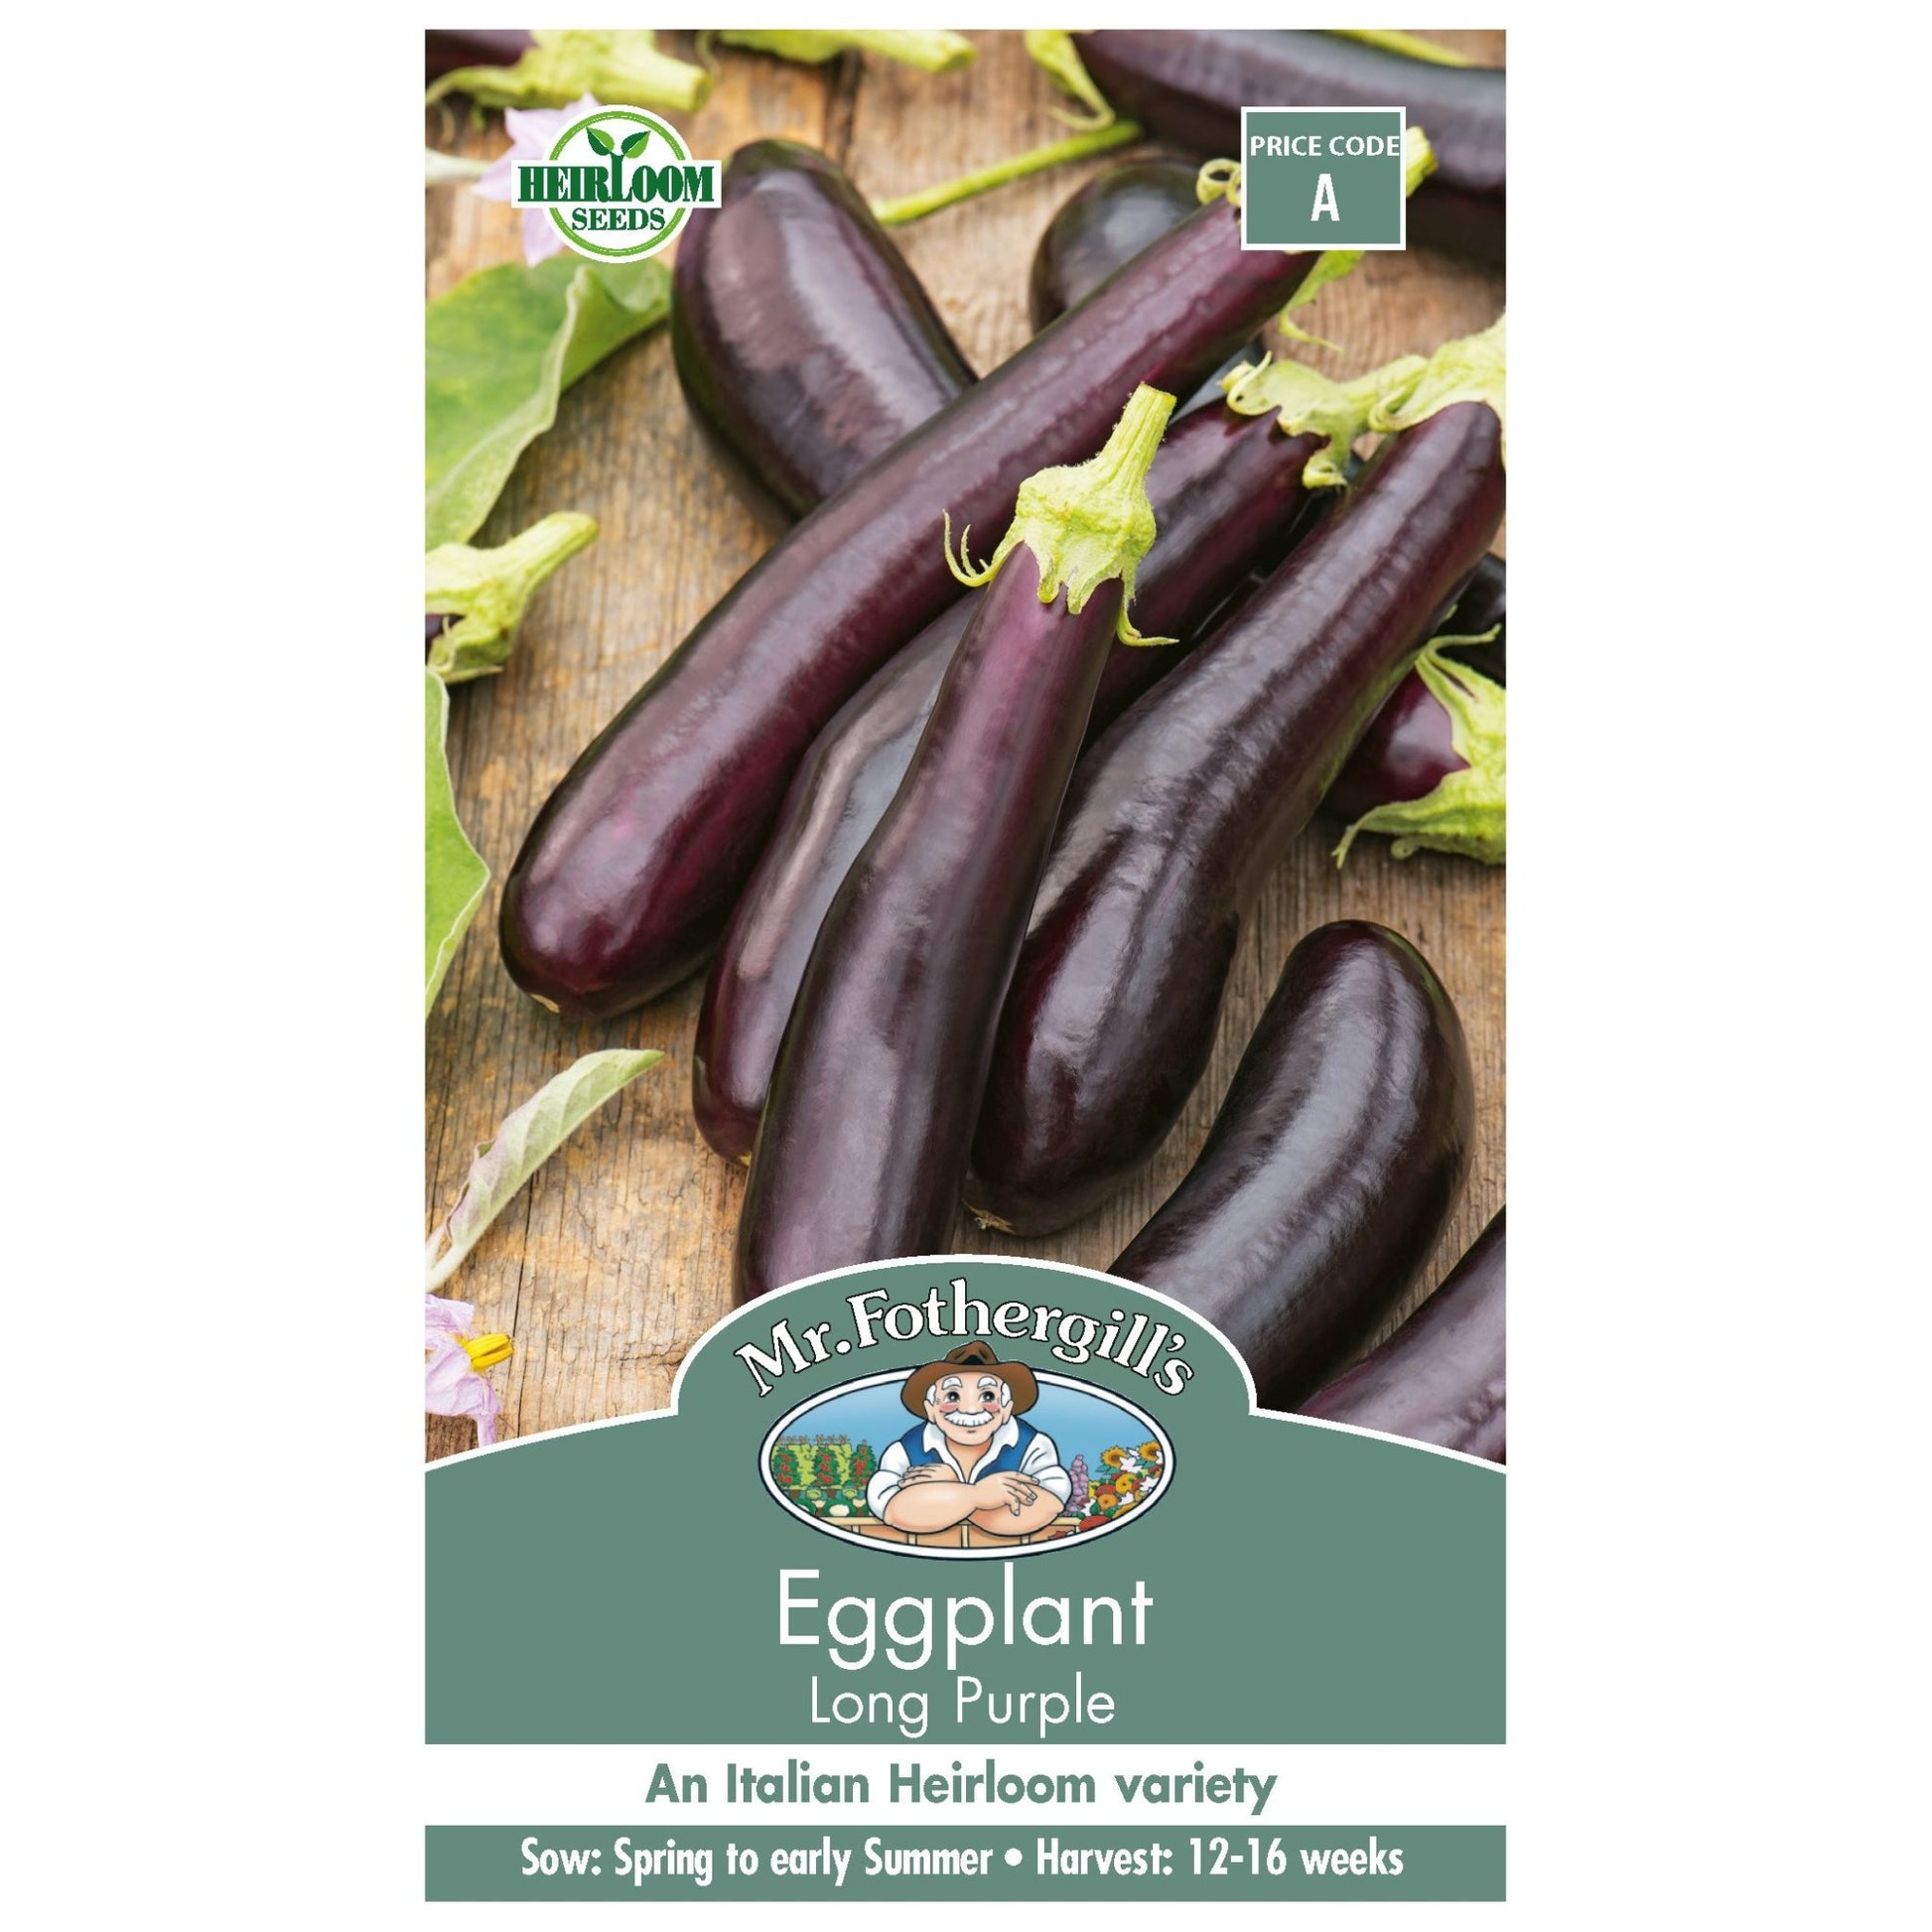 Mr Fothergills Eggplant Long Purple - Woonona Petfood & Produce